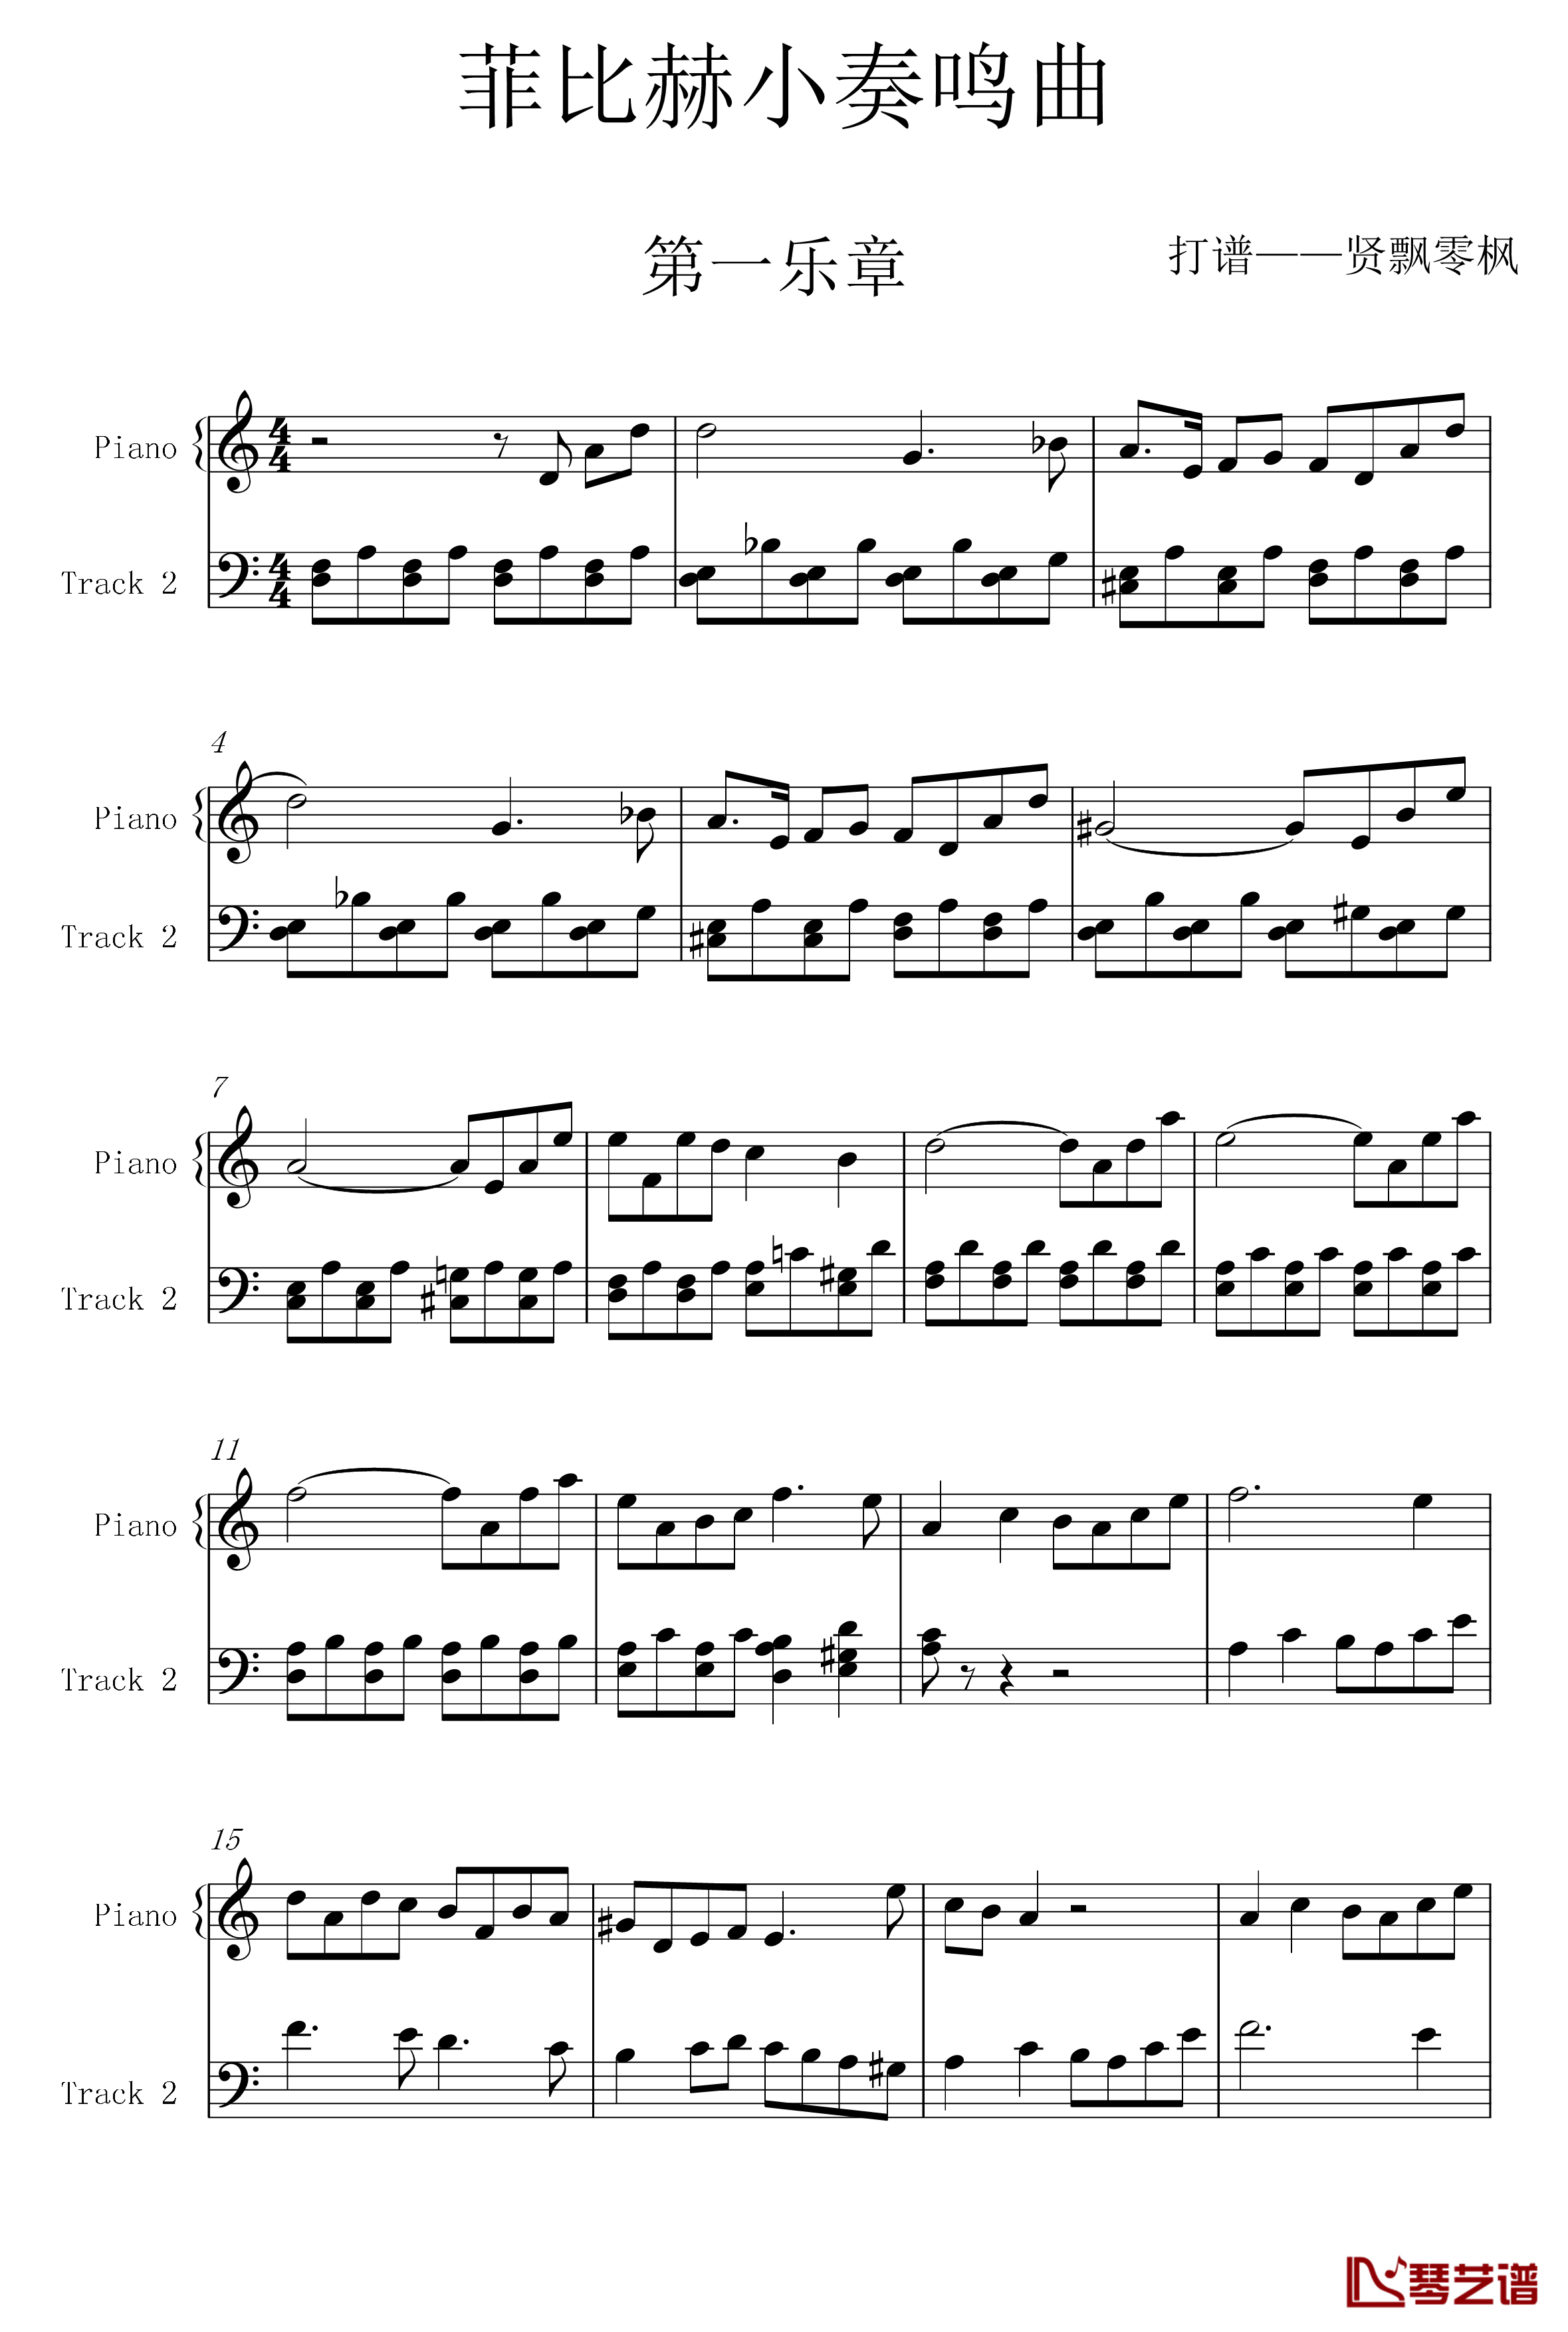 菲比赫小奏鸣曲钢琴谱-第一、二乐章-菲比赫1